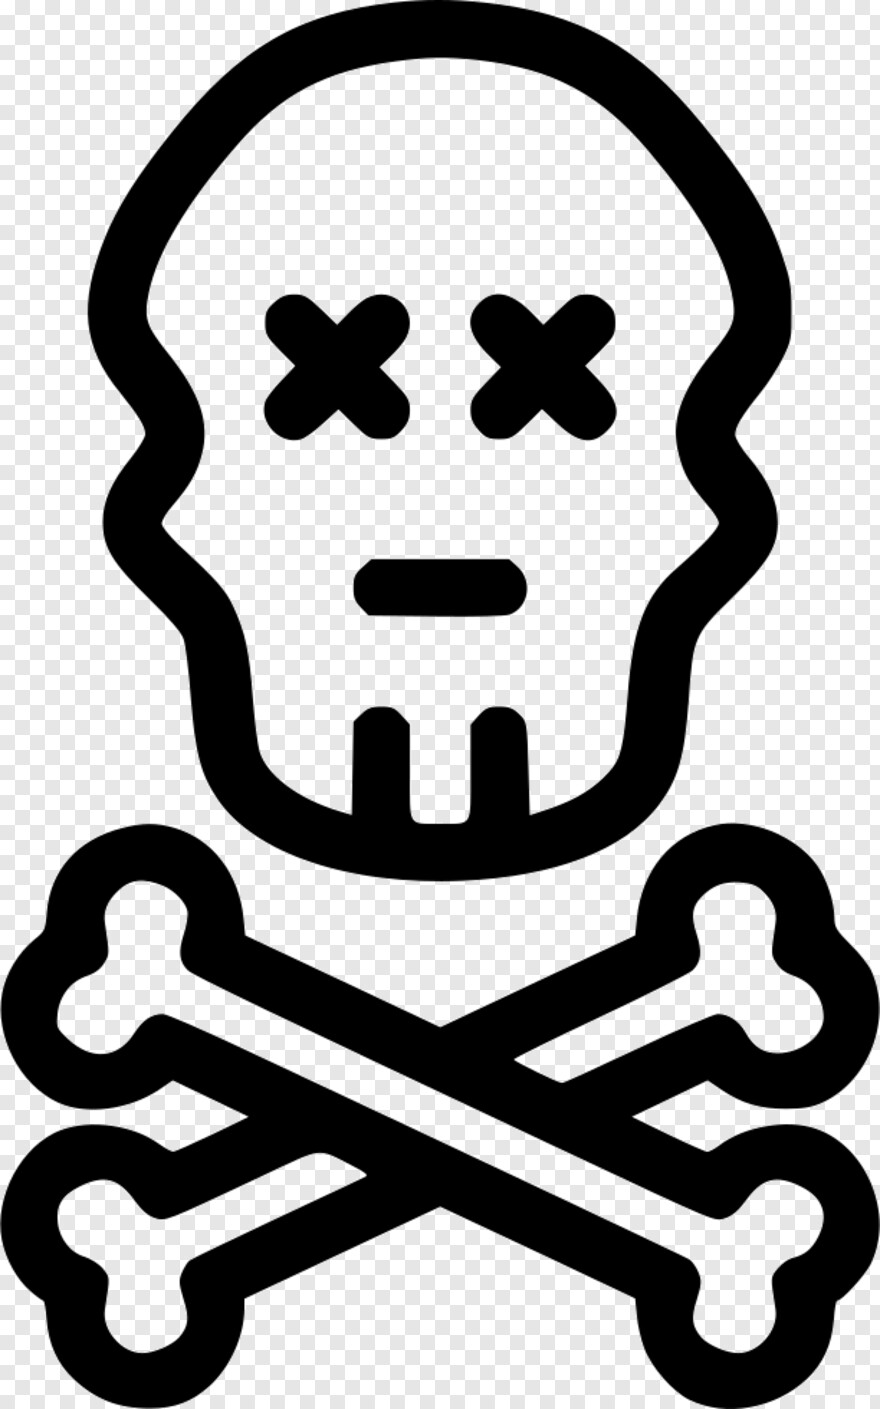  Skull And Bones, Pirate Skull, Black Skull, Skull Tattoo, Bull Skull, Skull And Crossbones